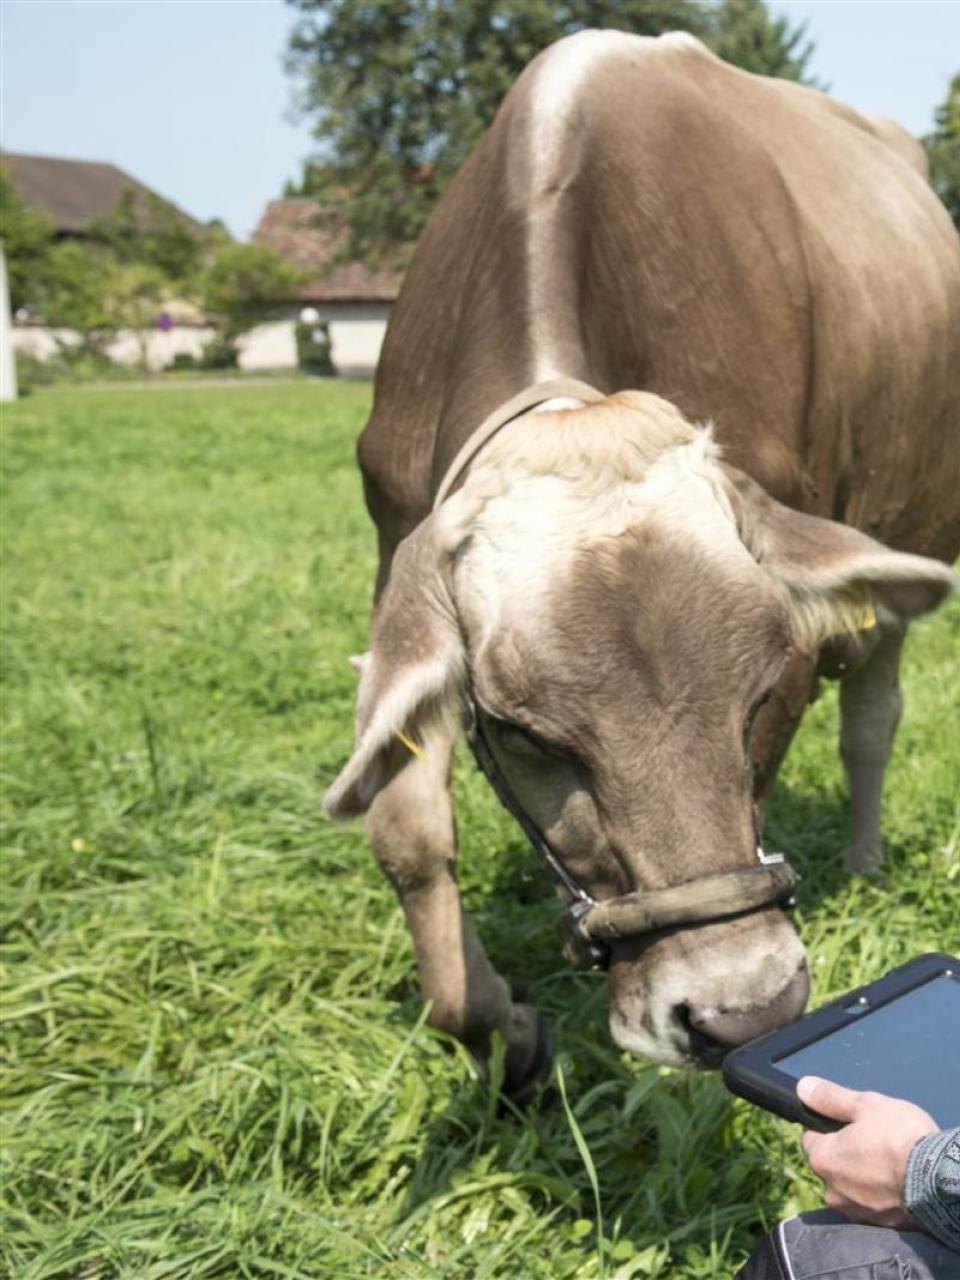 Les données récoltées grâce au licol et au podomètre connectés permettent de suivre le comportement des vaches sur une tablette numérique. ©Agroscope, Gabriela Brändle